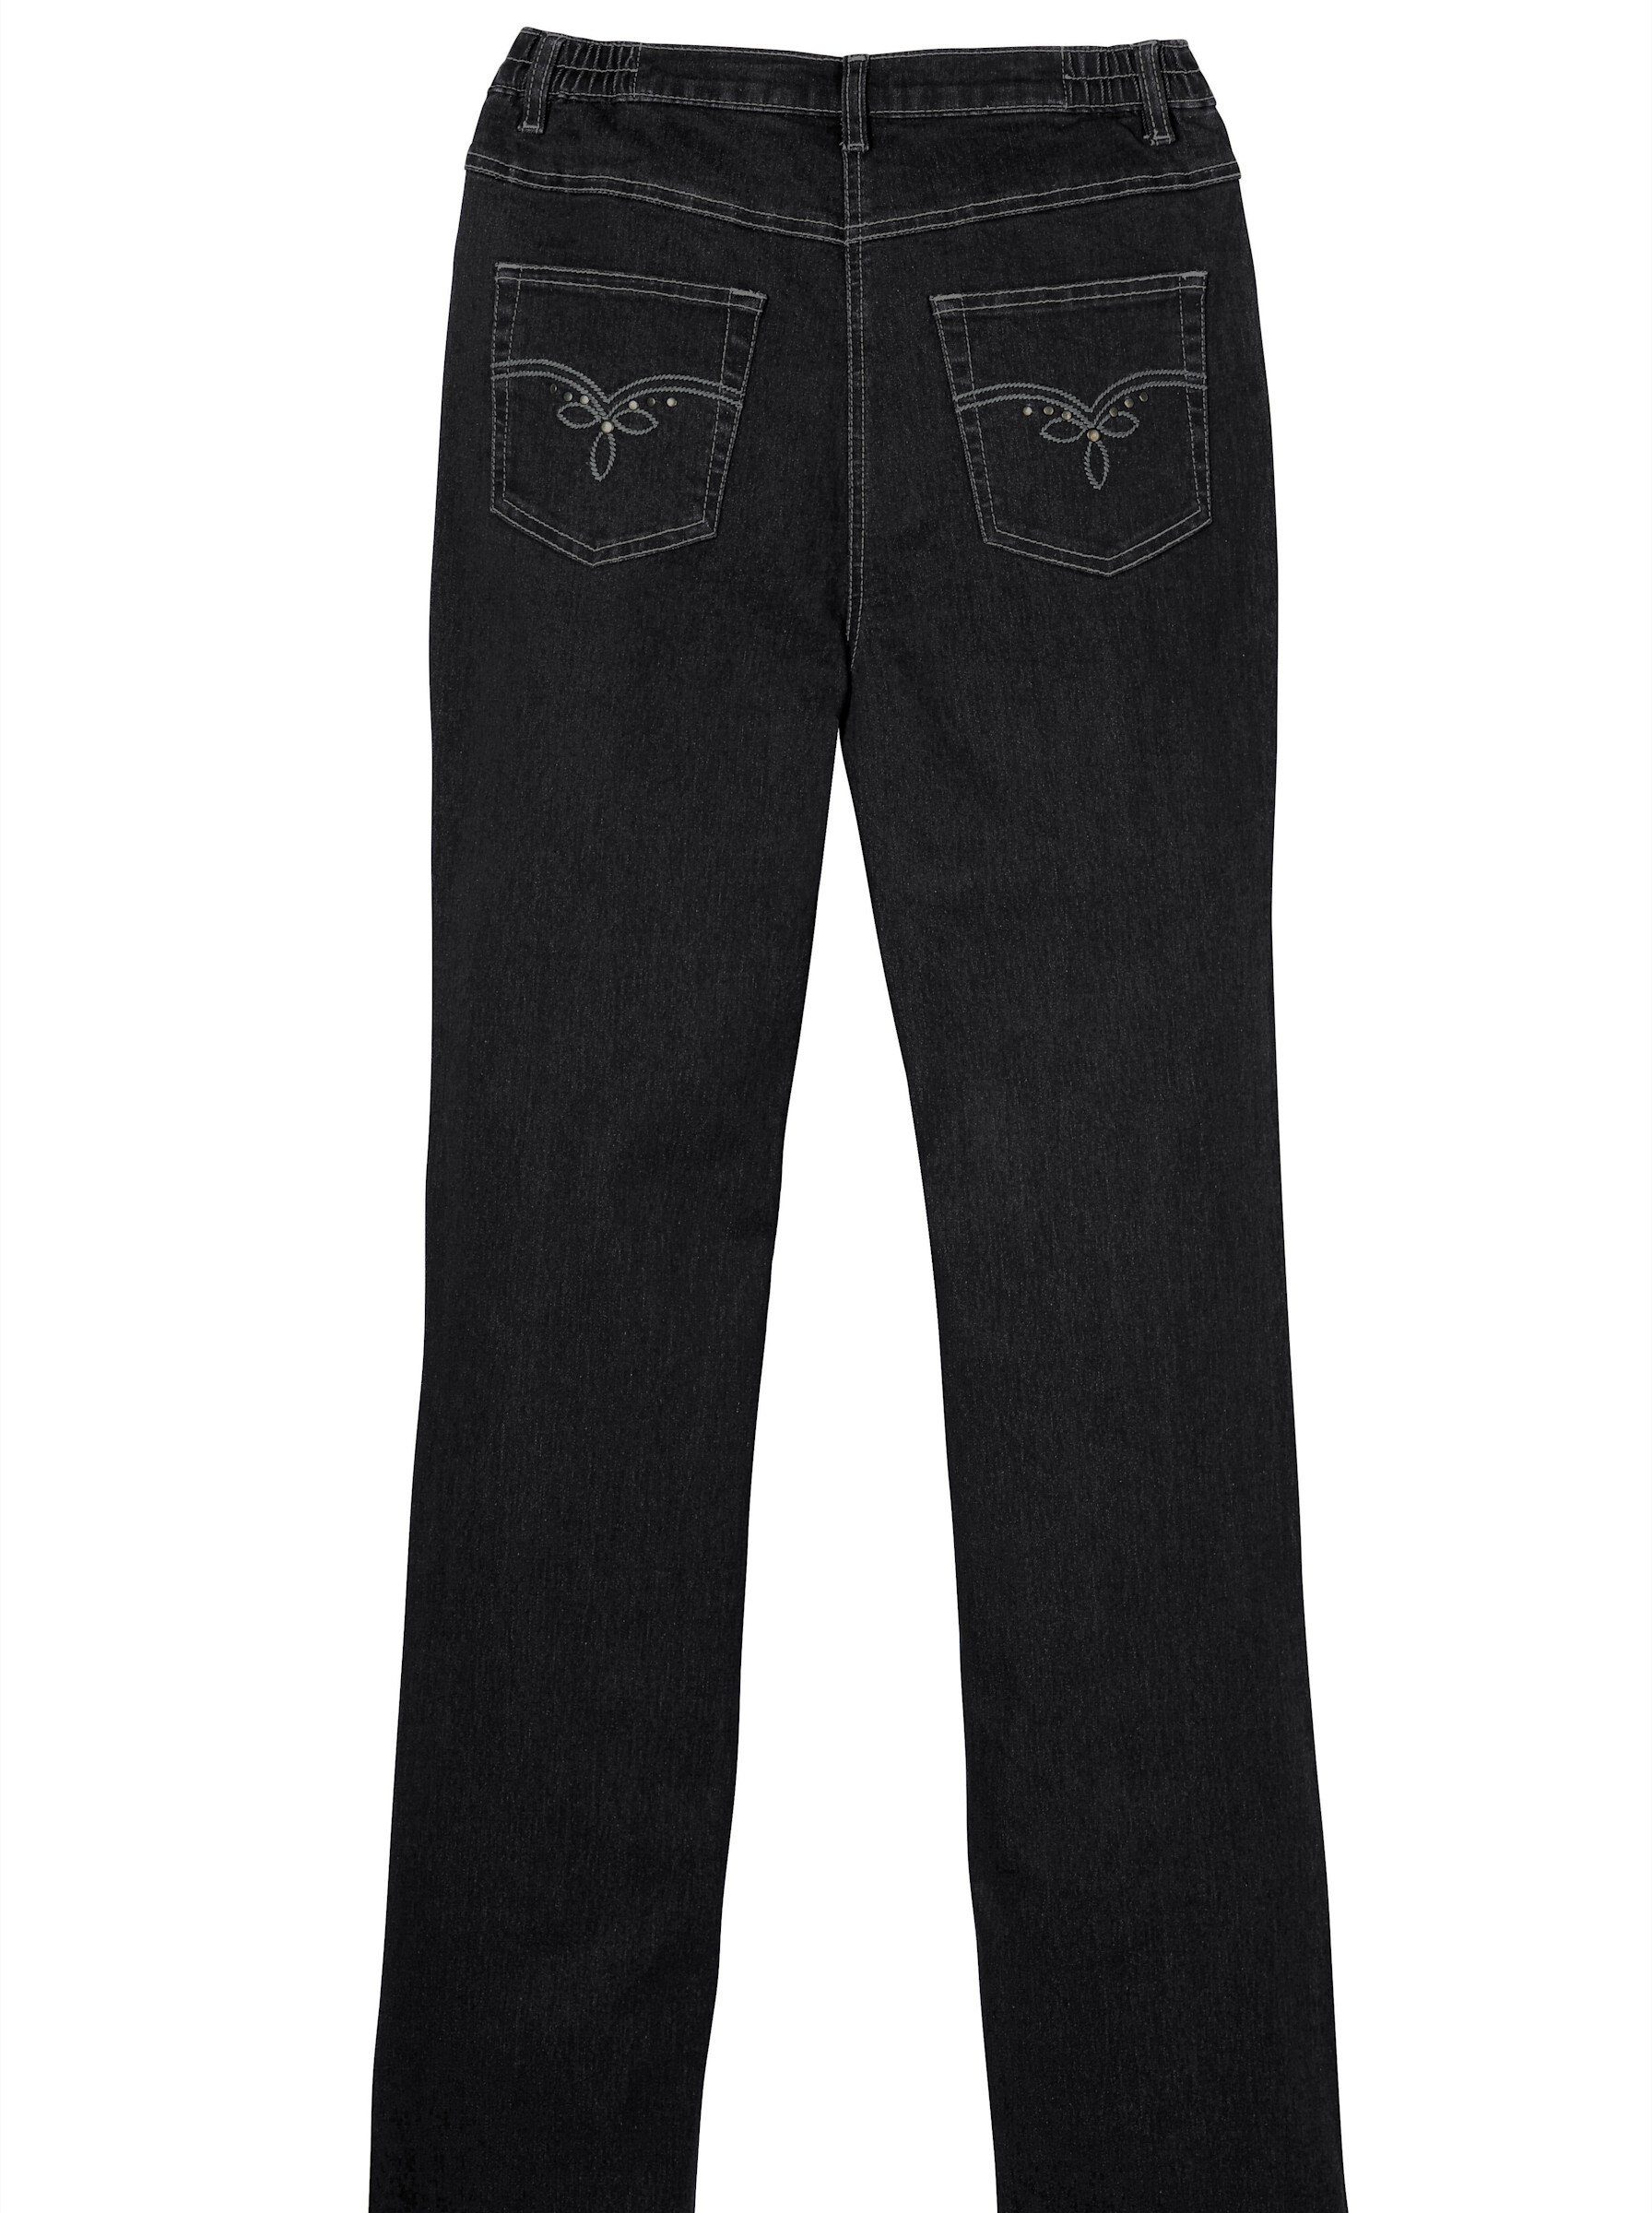 Sieh black-denim Bequeme Jeans an!